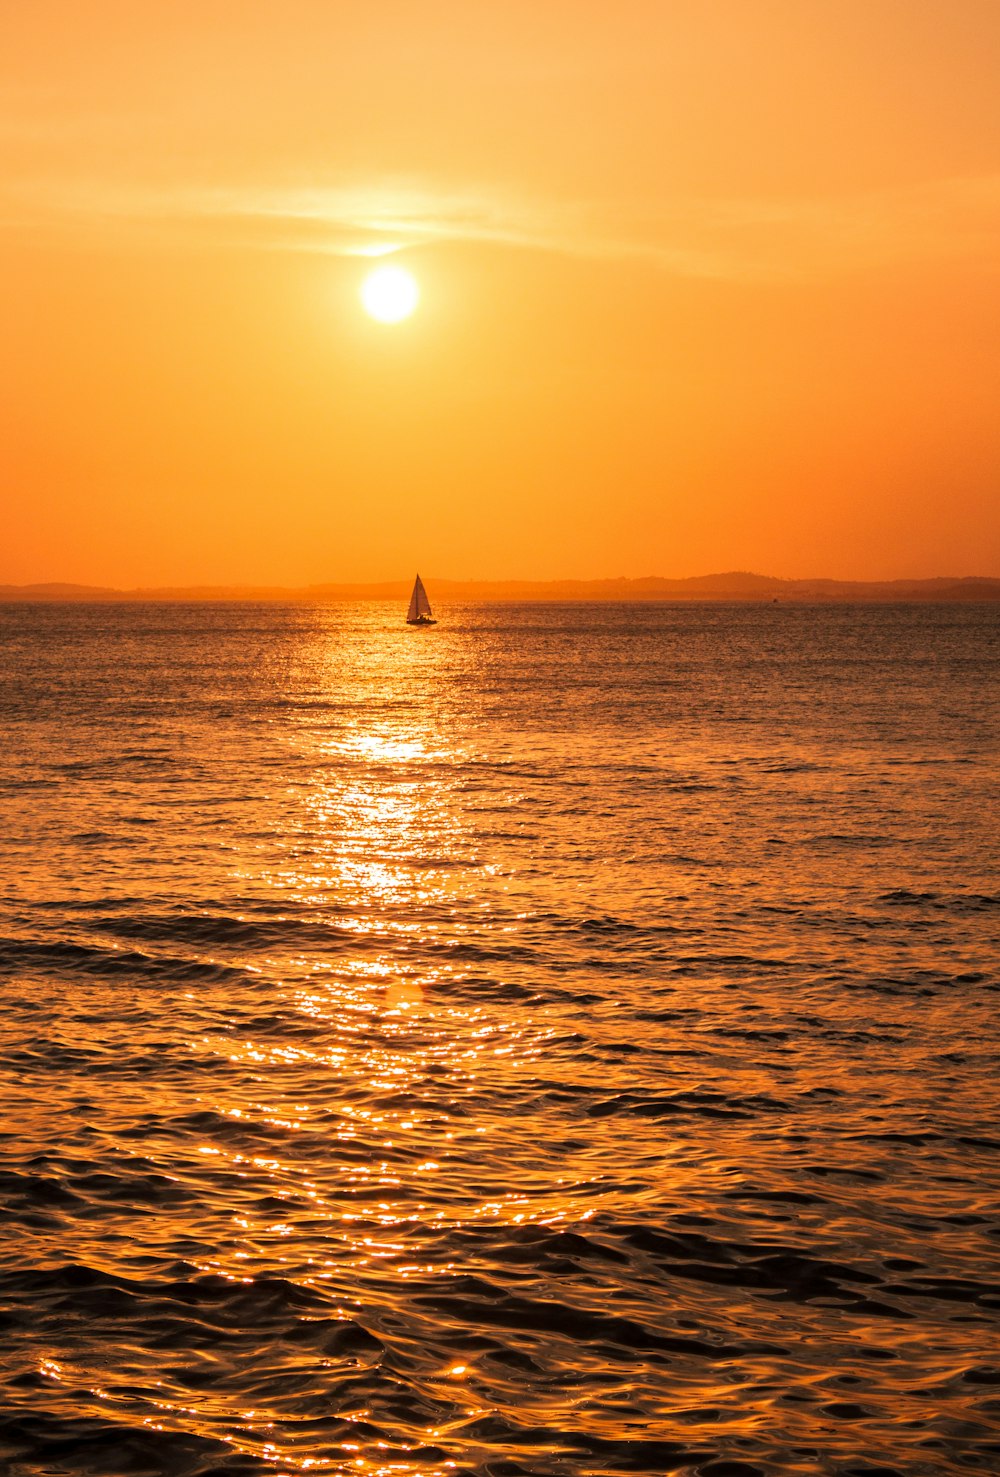 Il sole sta tramontando sull'oceano con una barca a vela in lontananza